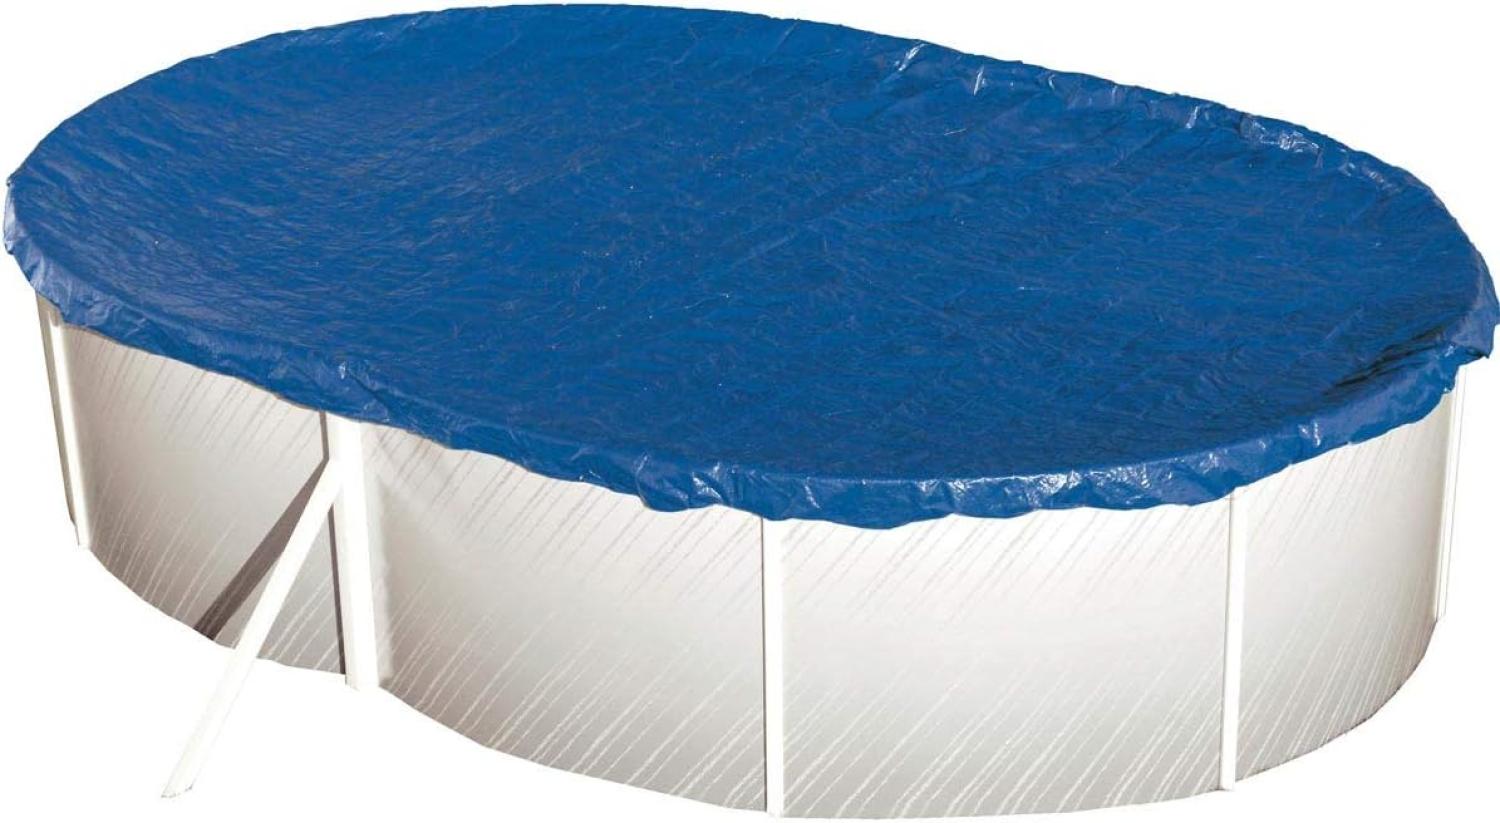 Steinbach Abdeckplane "Extra" für ovale Swimming Pool Stahlwandbecken, blau, 640 x 360 cm Bild 1